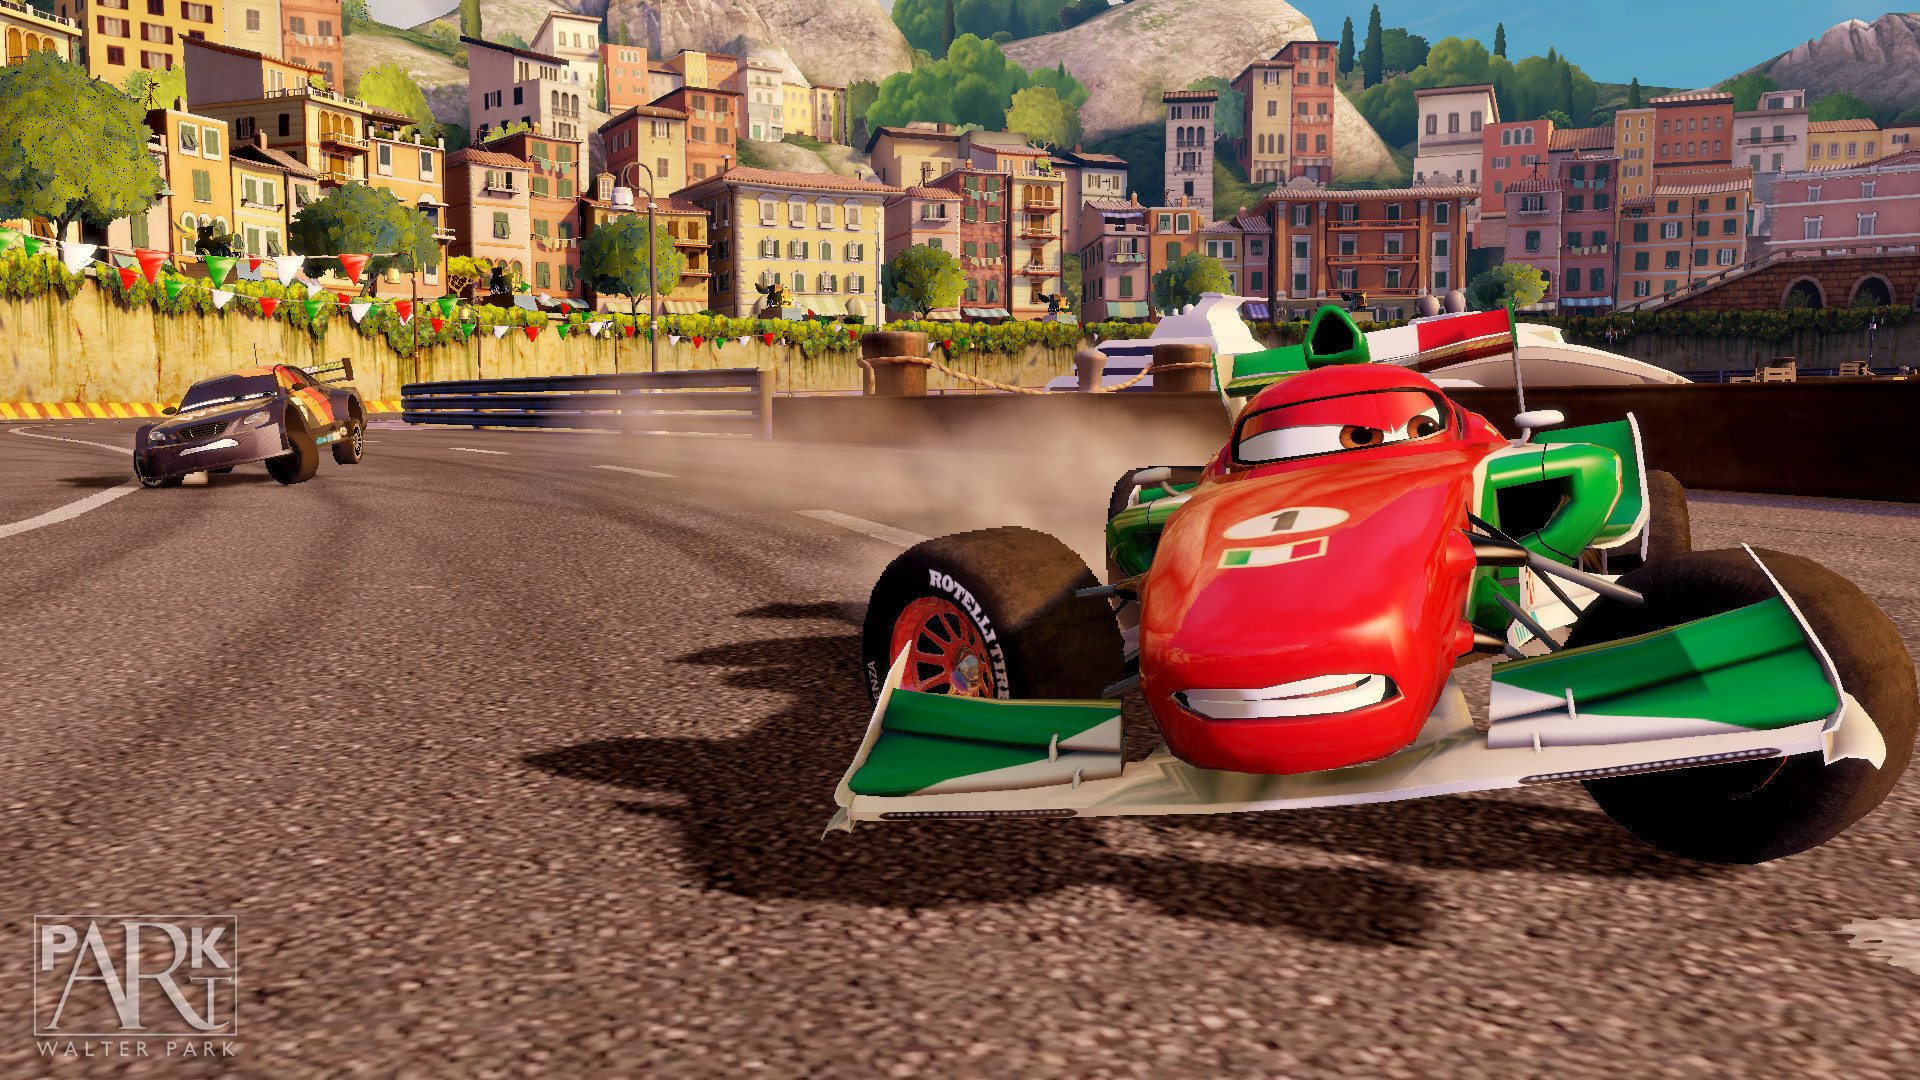 Две гонки игры. Игра Disney Pixar cars 2. Cars 2 Xbox 360. Тачки / cars: the videogame. Тачки 2 хбокс 360.